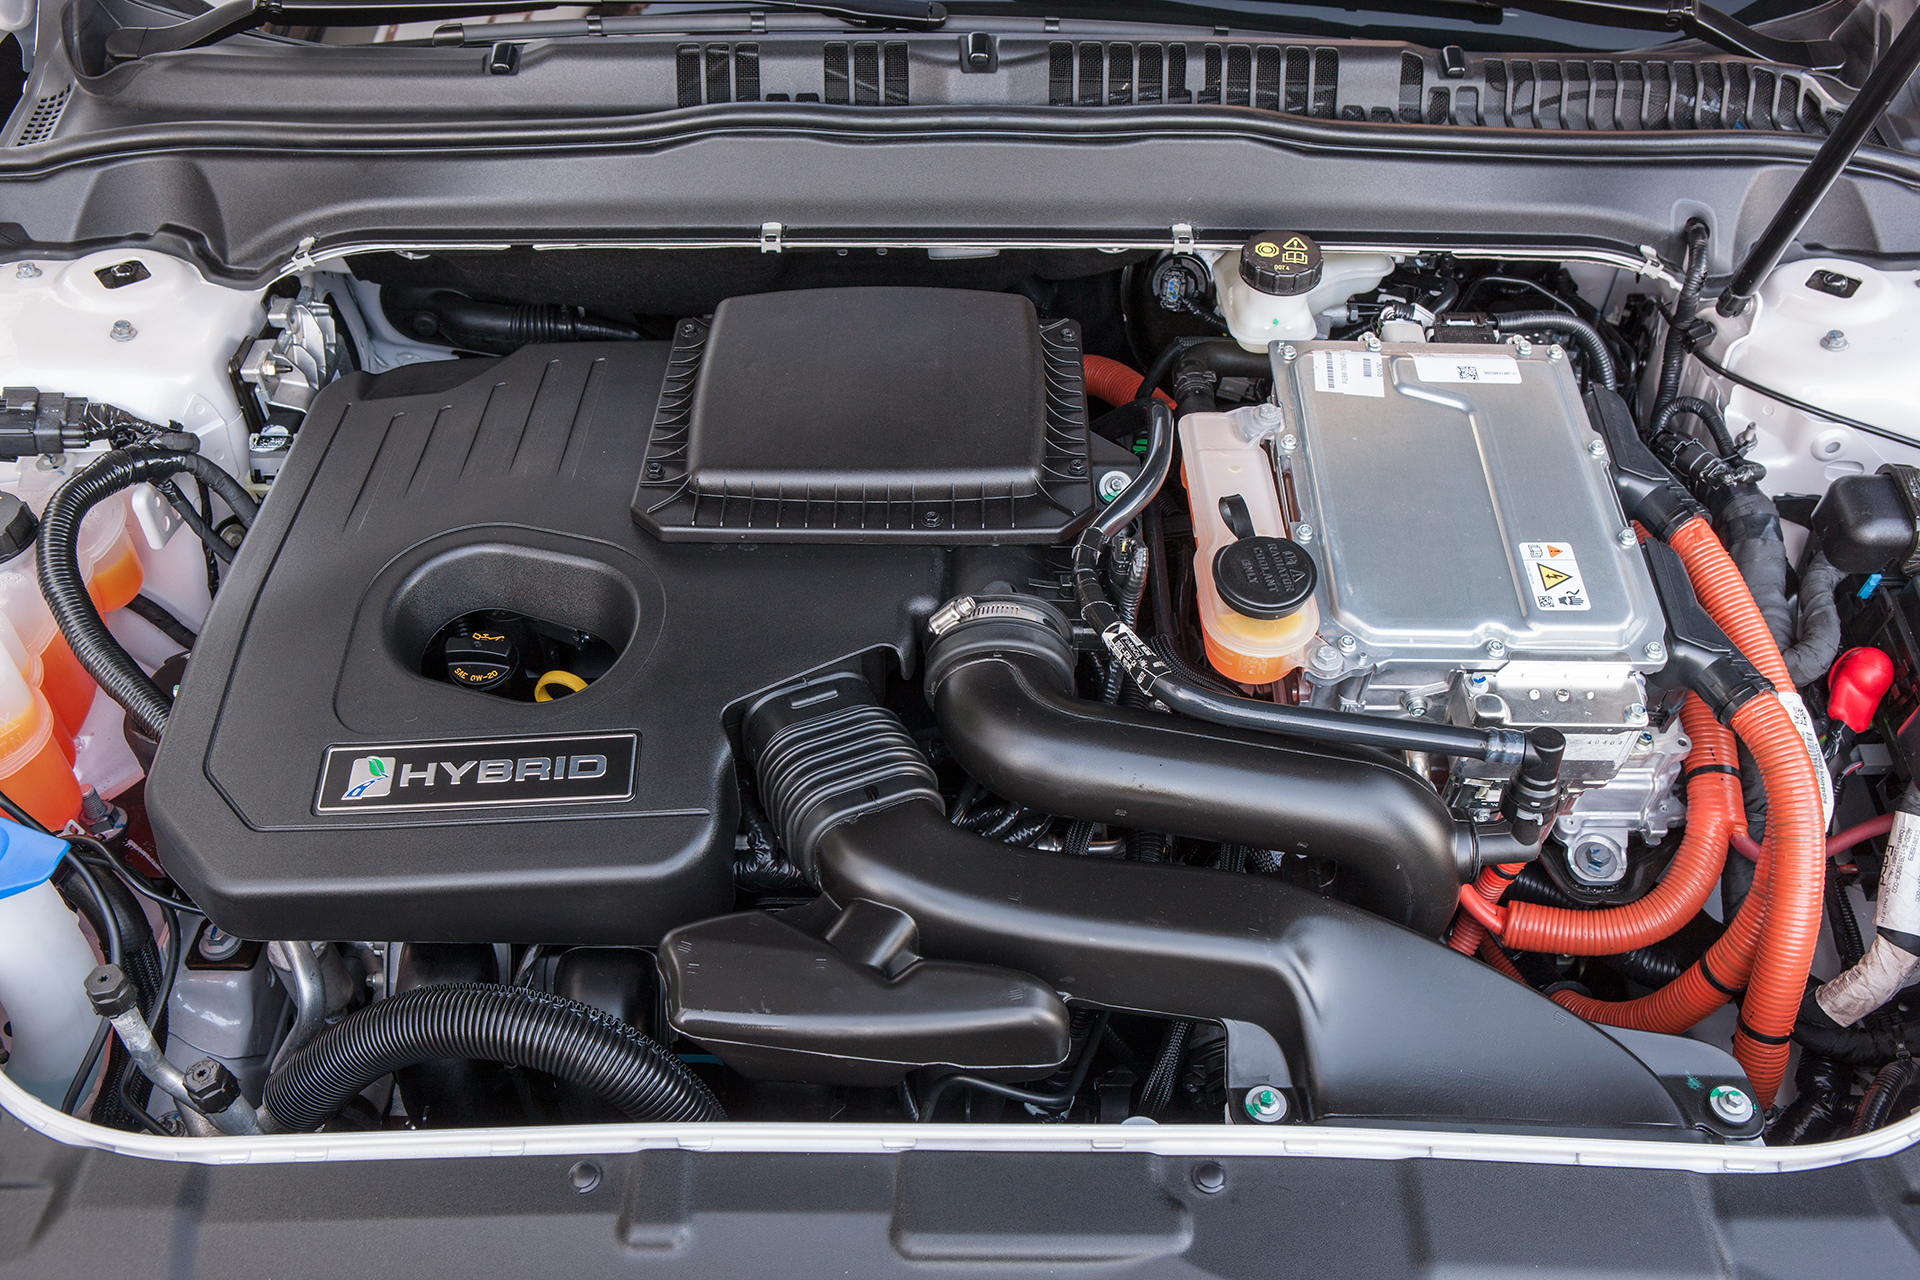 Ford Mondeo Hybrid 2015 - under the hood / sous le capot moteur